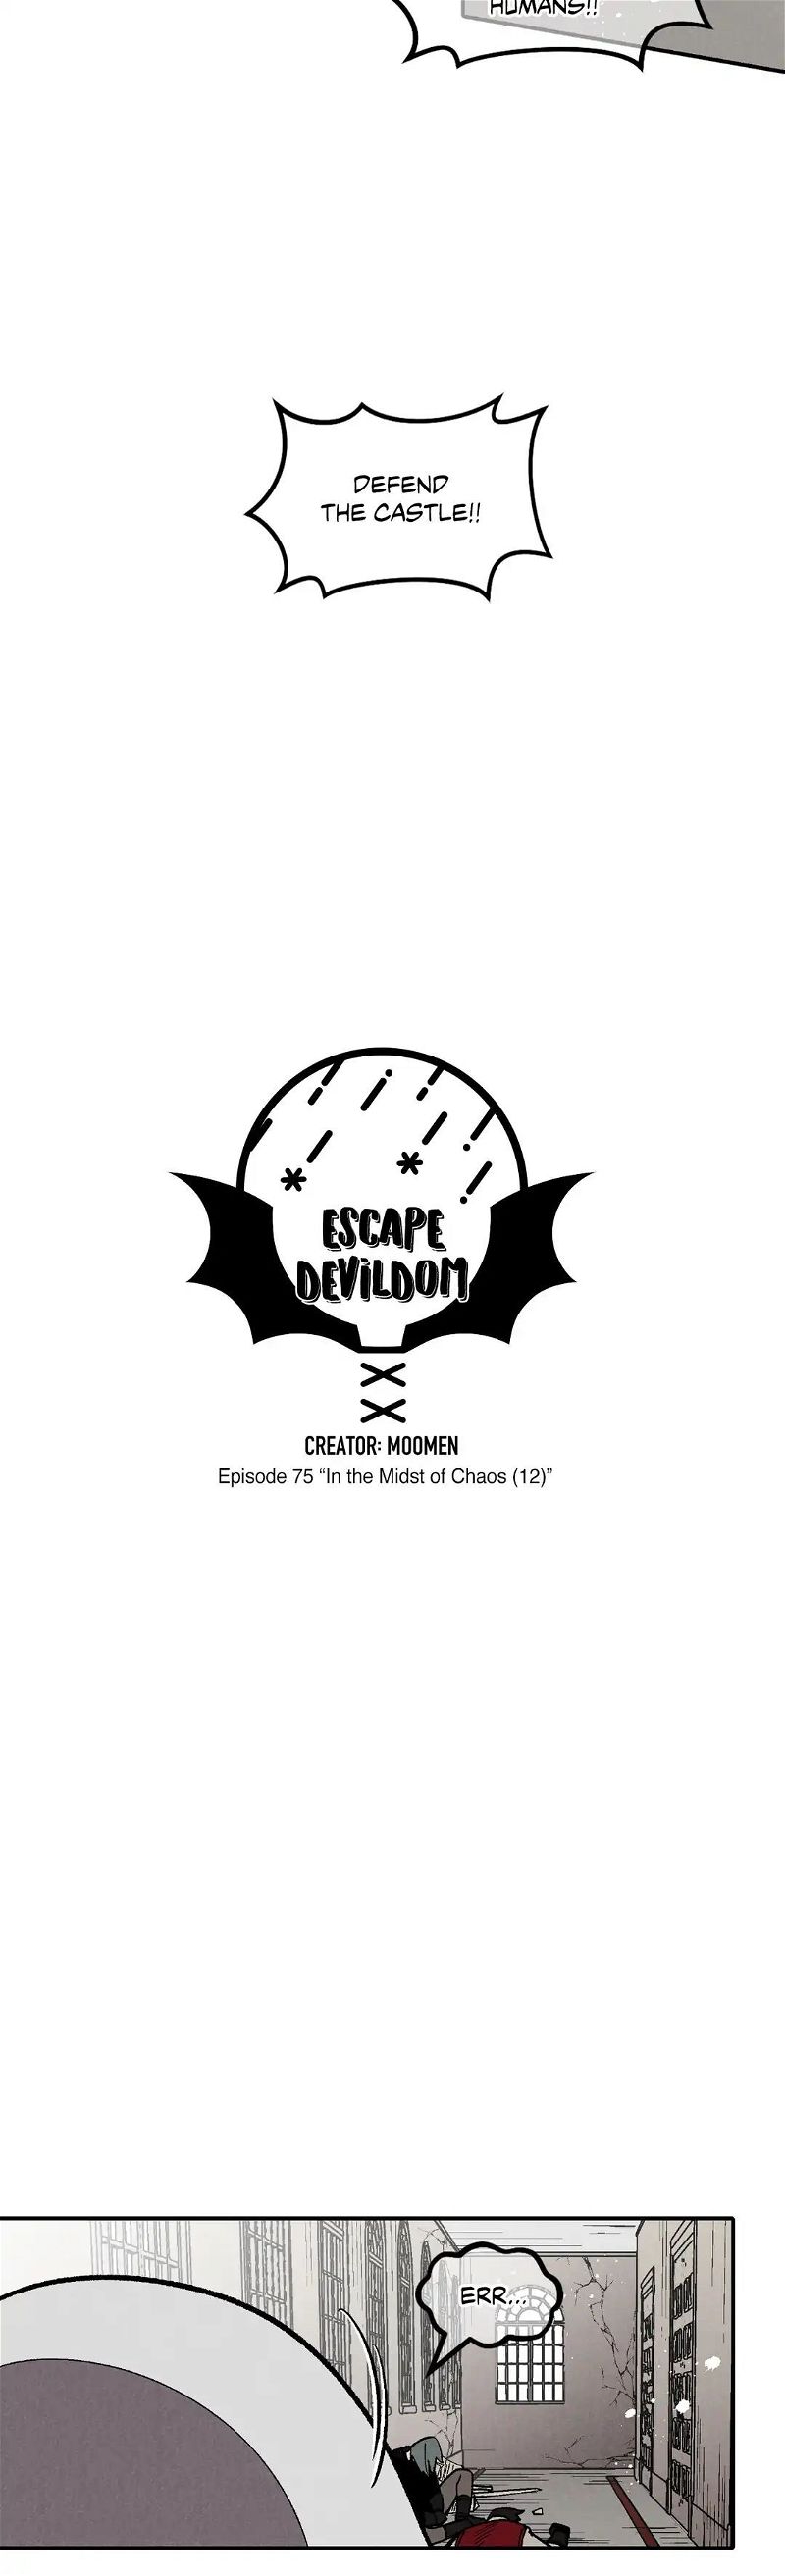 Escape Devildom Chapter 75 page 9